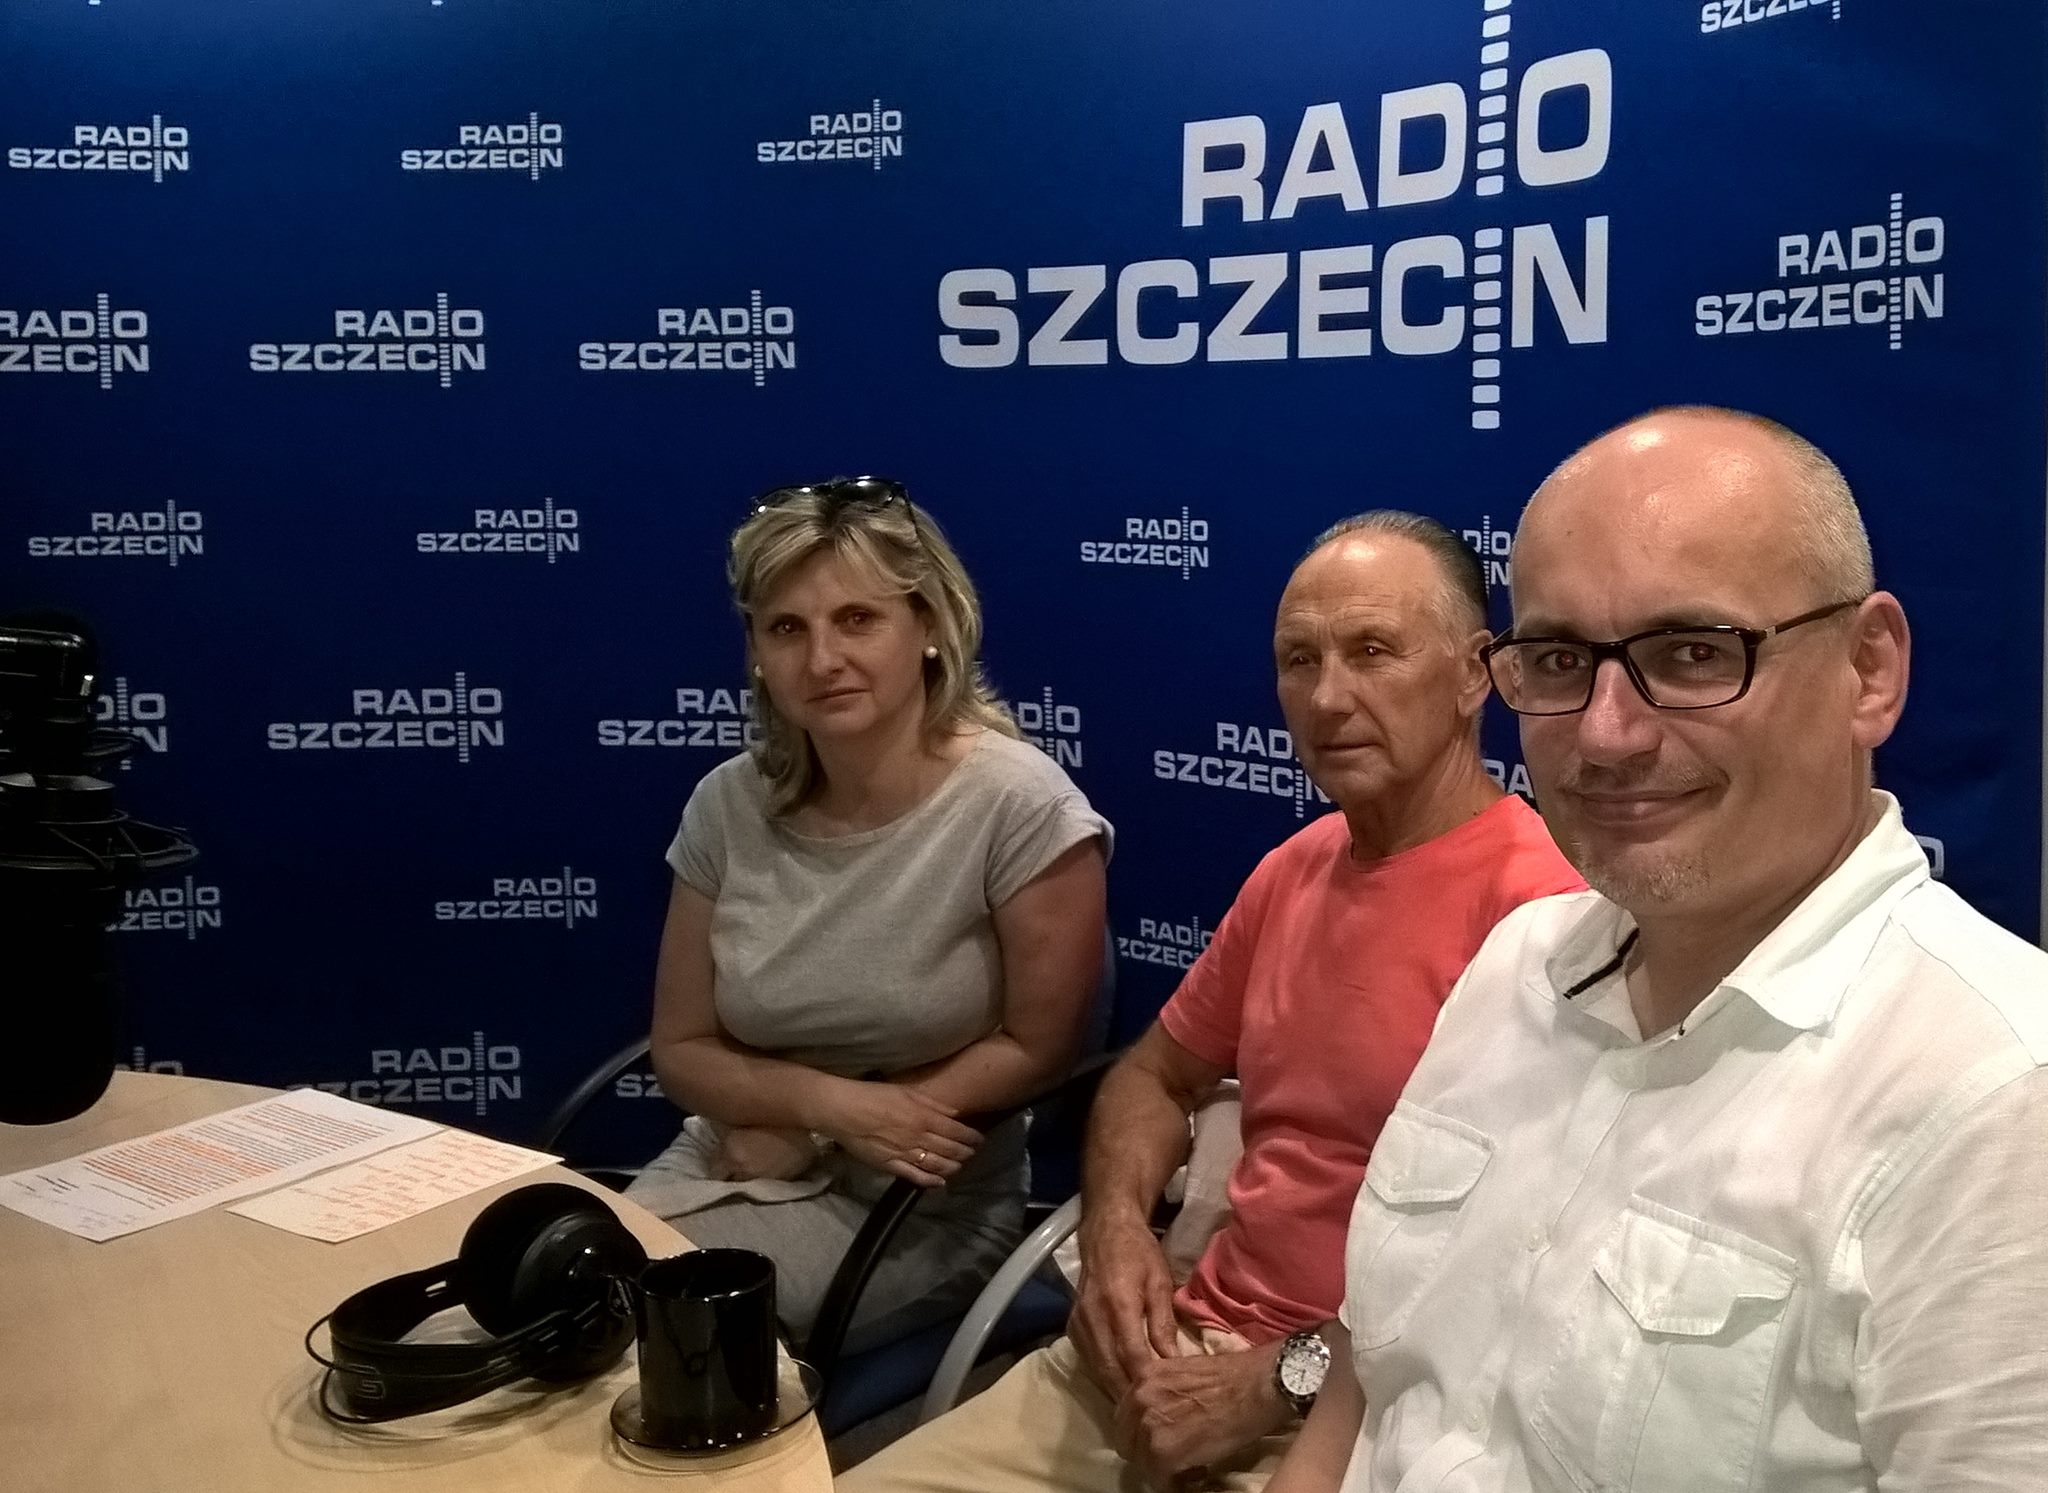 IGA’cki Band czyli Szczecińska Akademia Szantowa gościła w Radio Szczecin